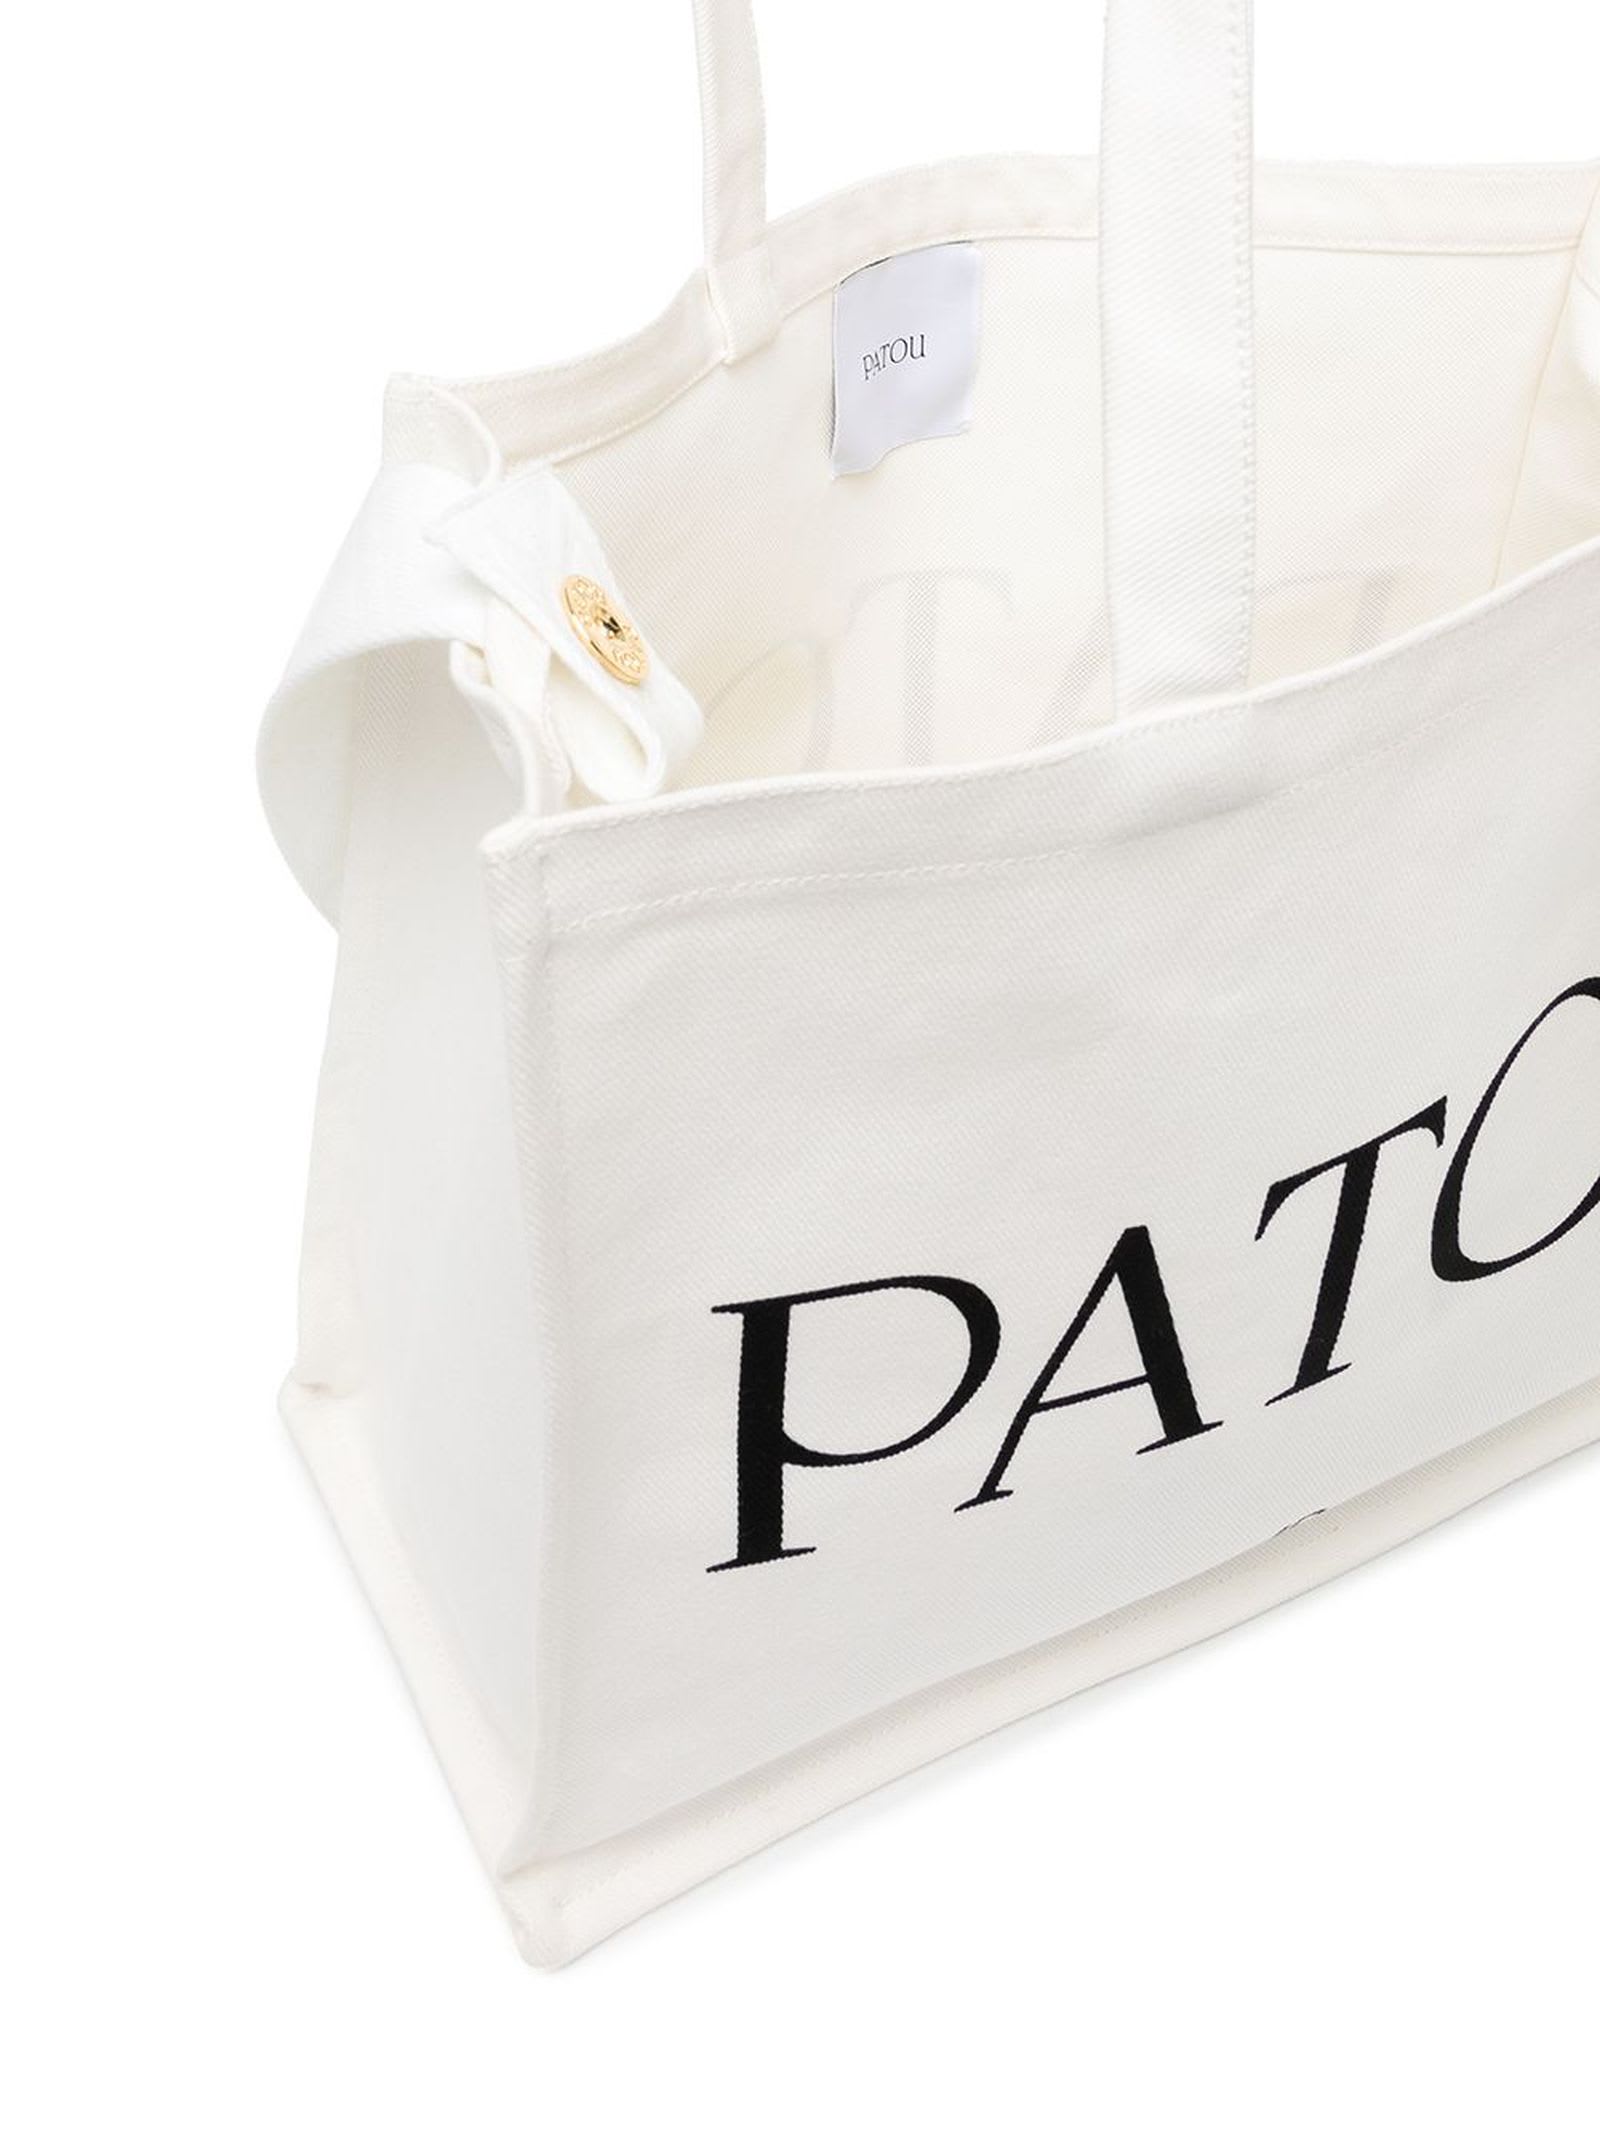 Shop Patou White Cotton Tote Bag